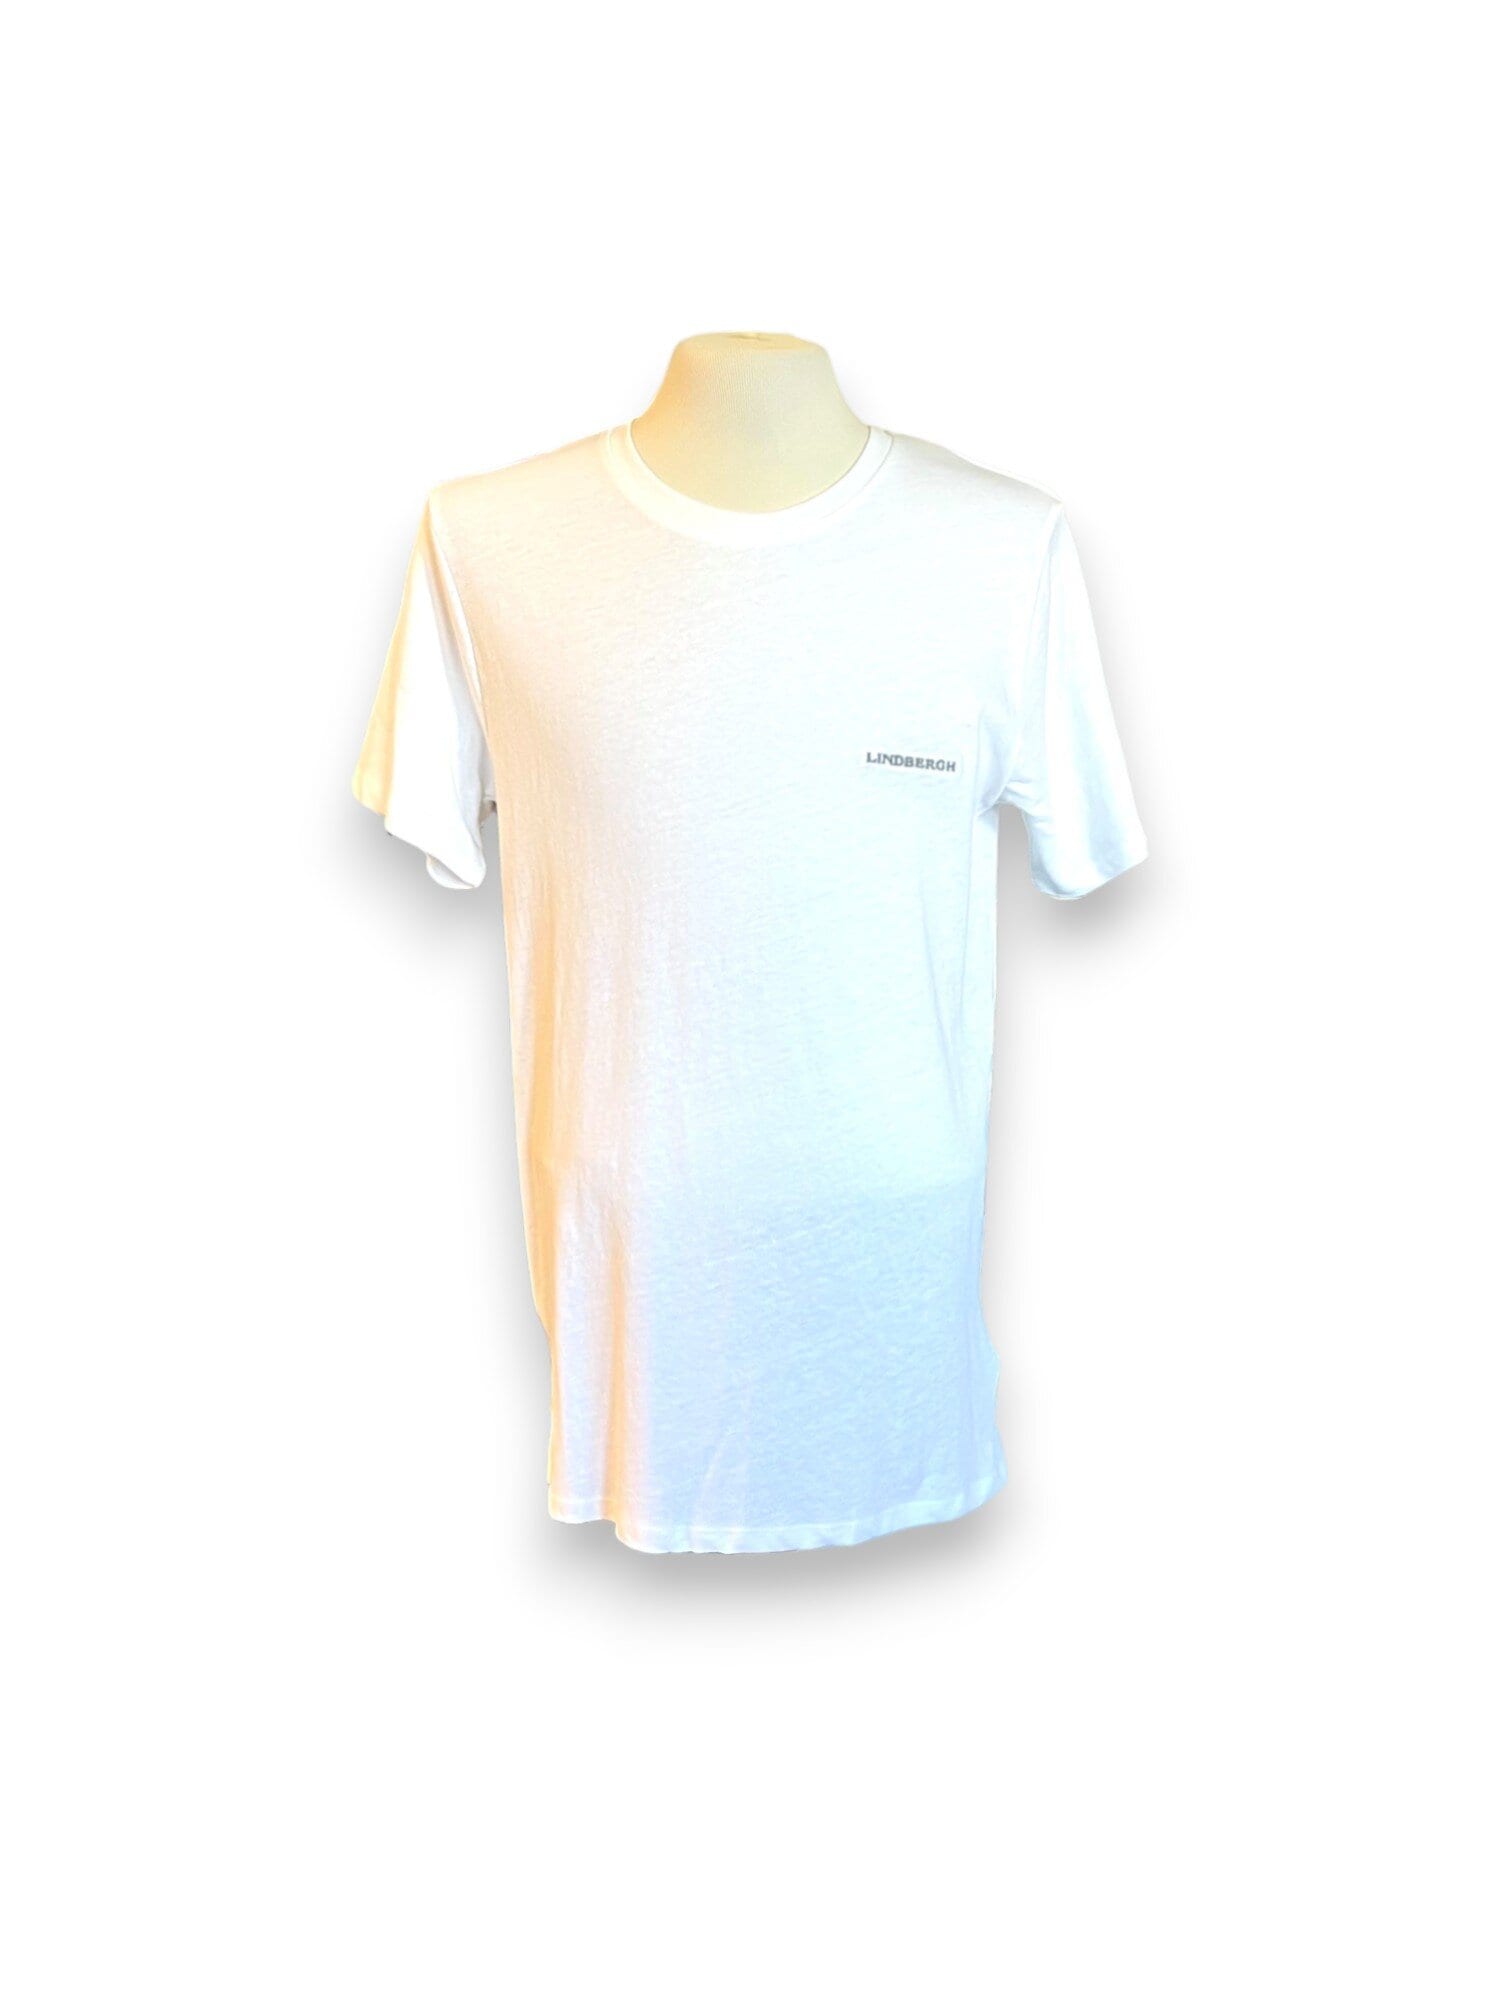 T-shirt I Linneblandning - White